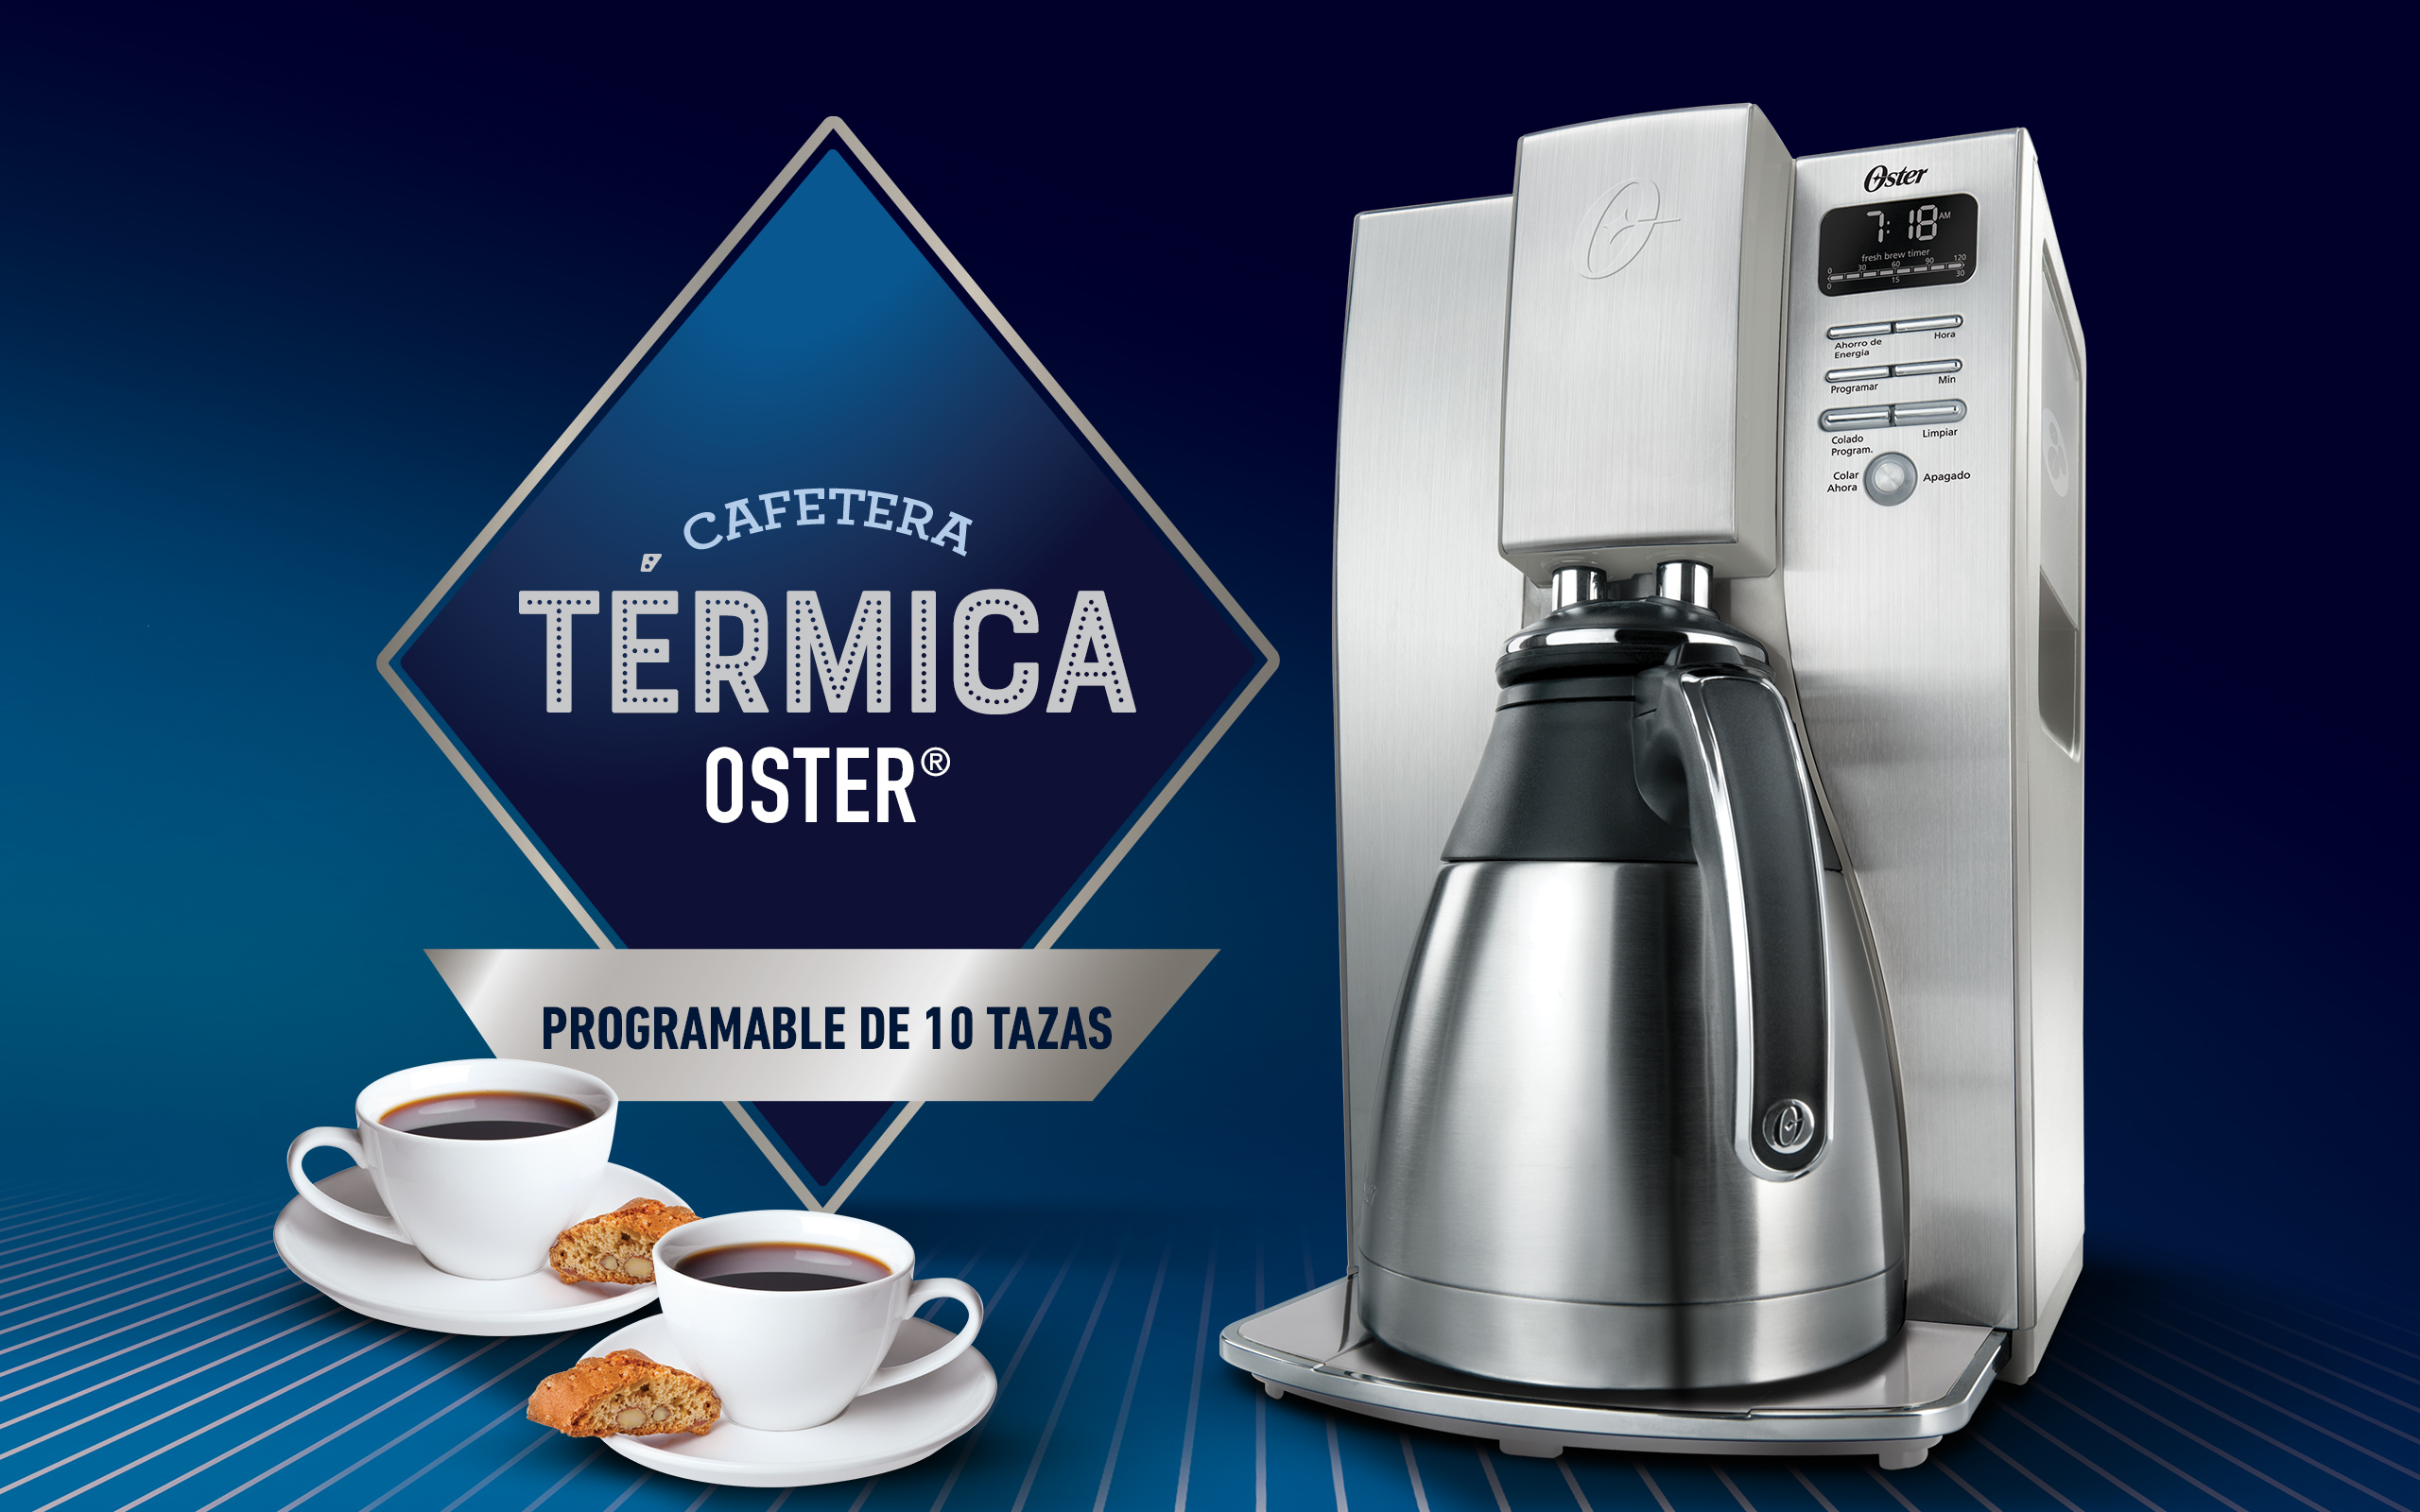 Cafetera térmica programable Oster® BVSTDC4411 - Oster